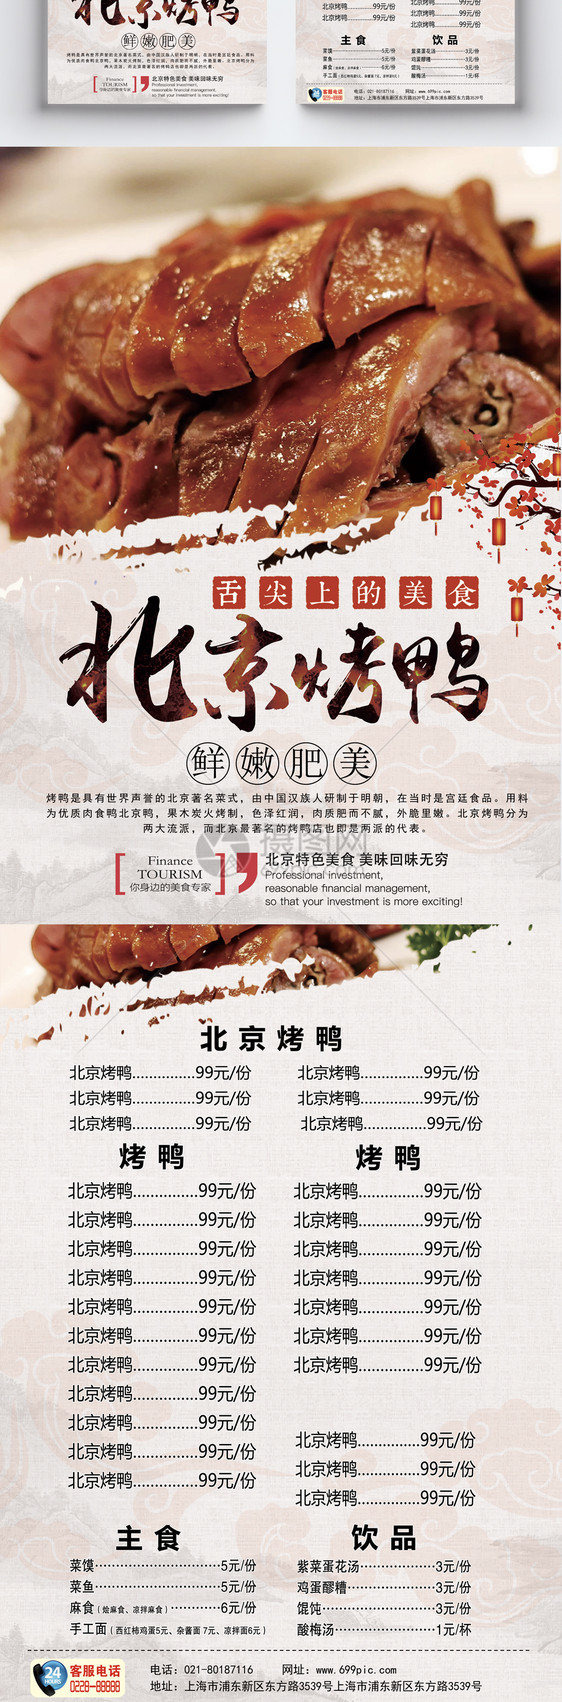 北京烤鸭美食宣传单图片